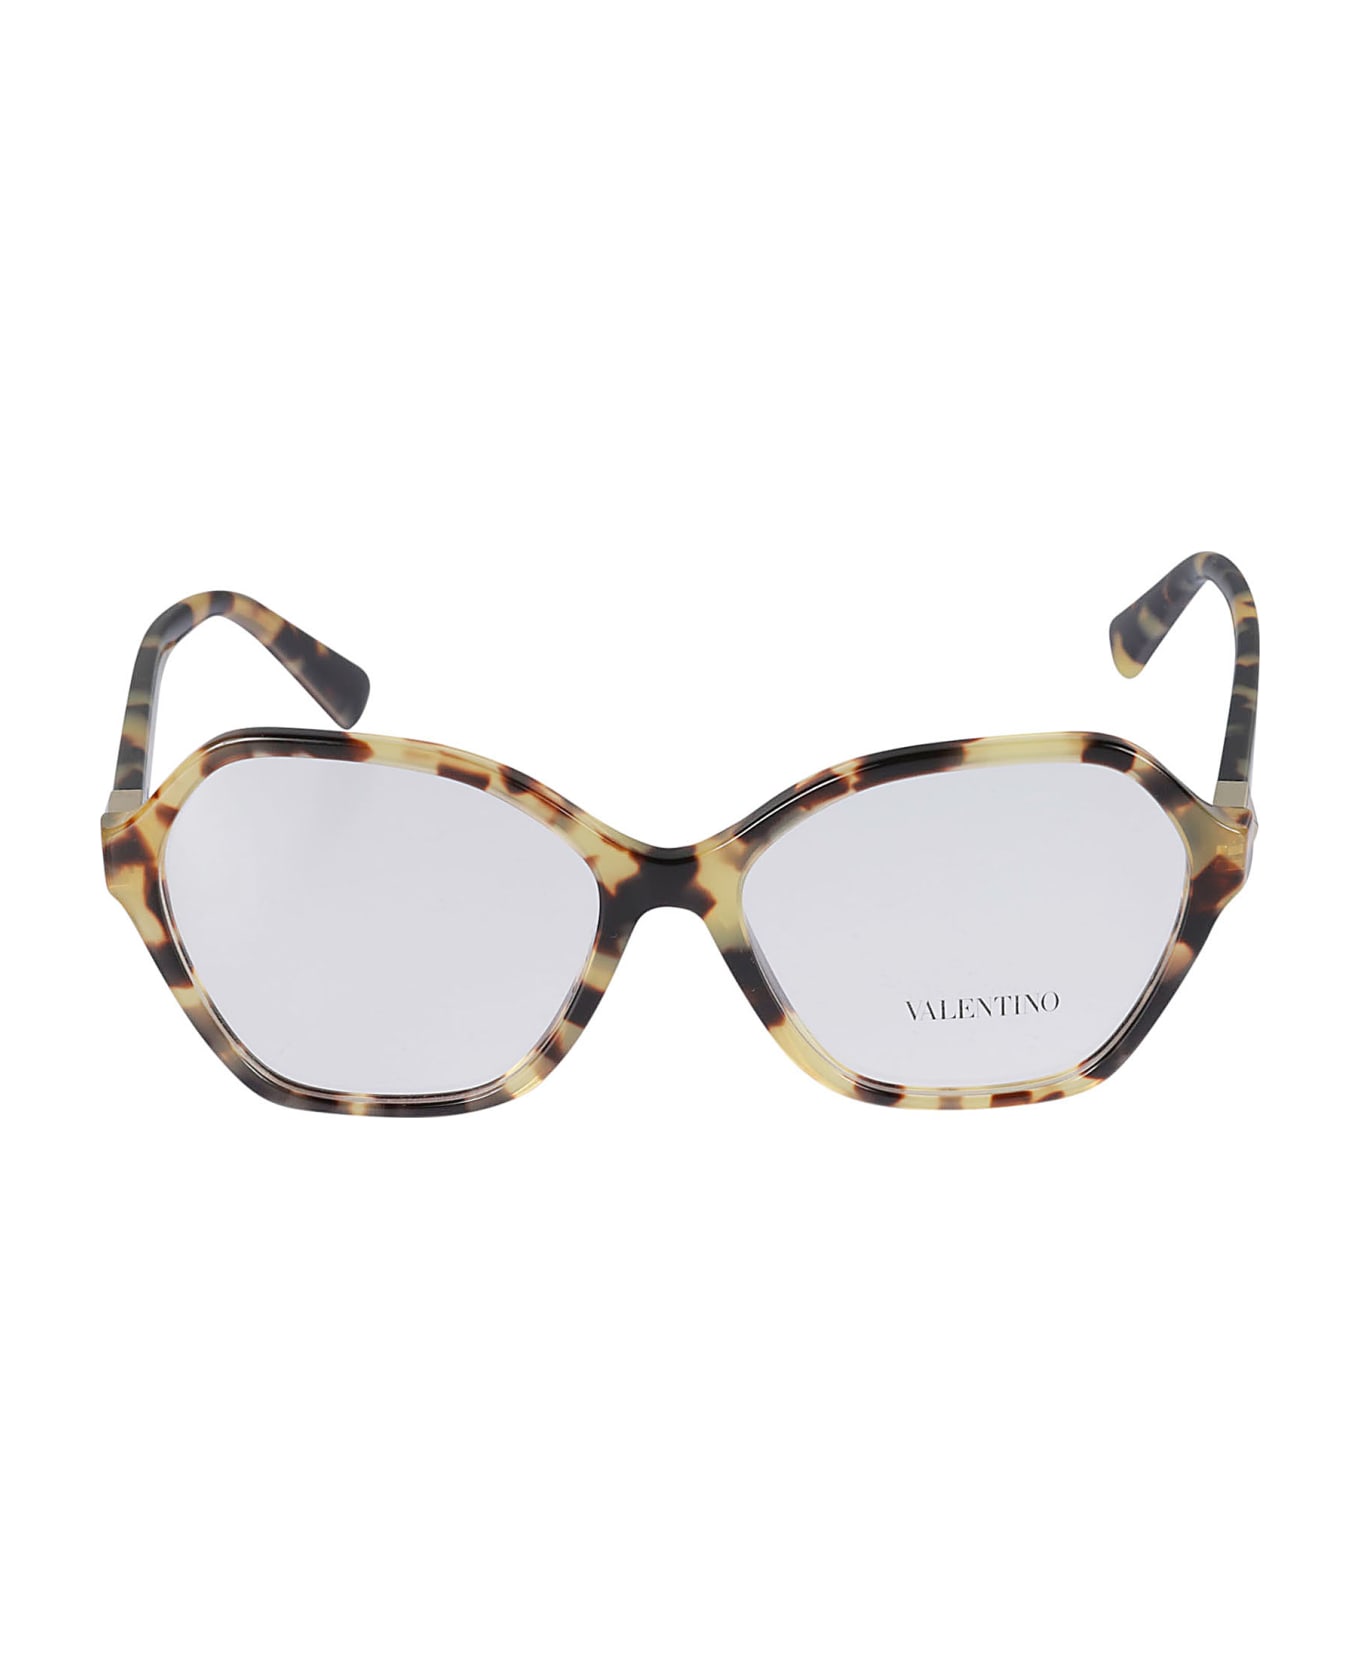 Valentino Eyewear Vista5036 Glasses - 5036 アイウェア